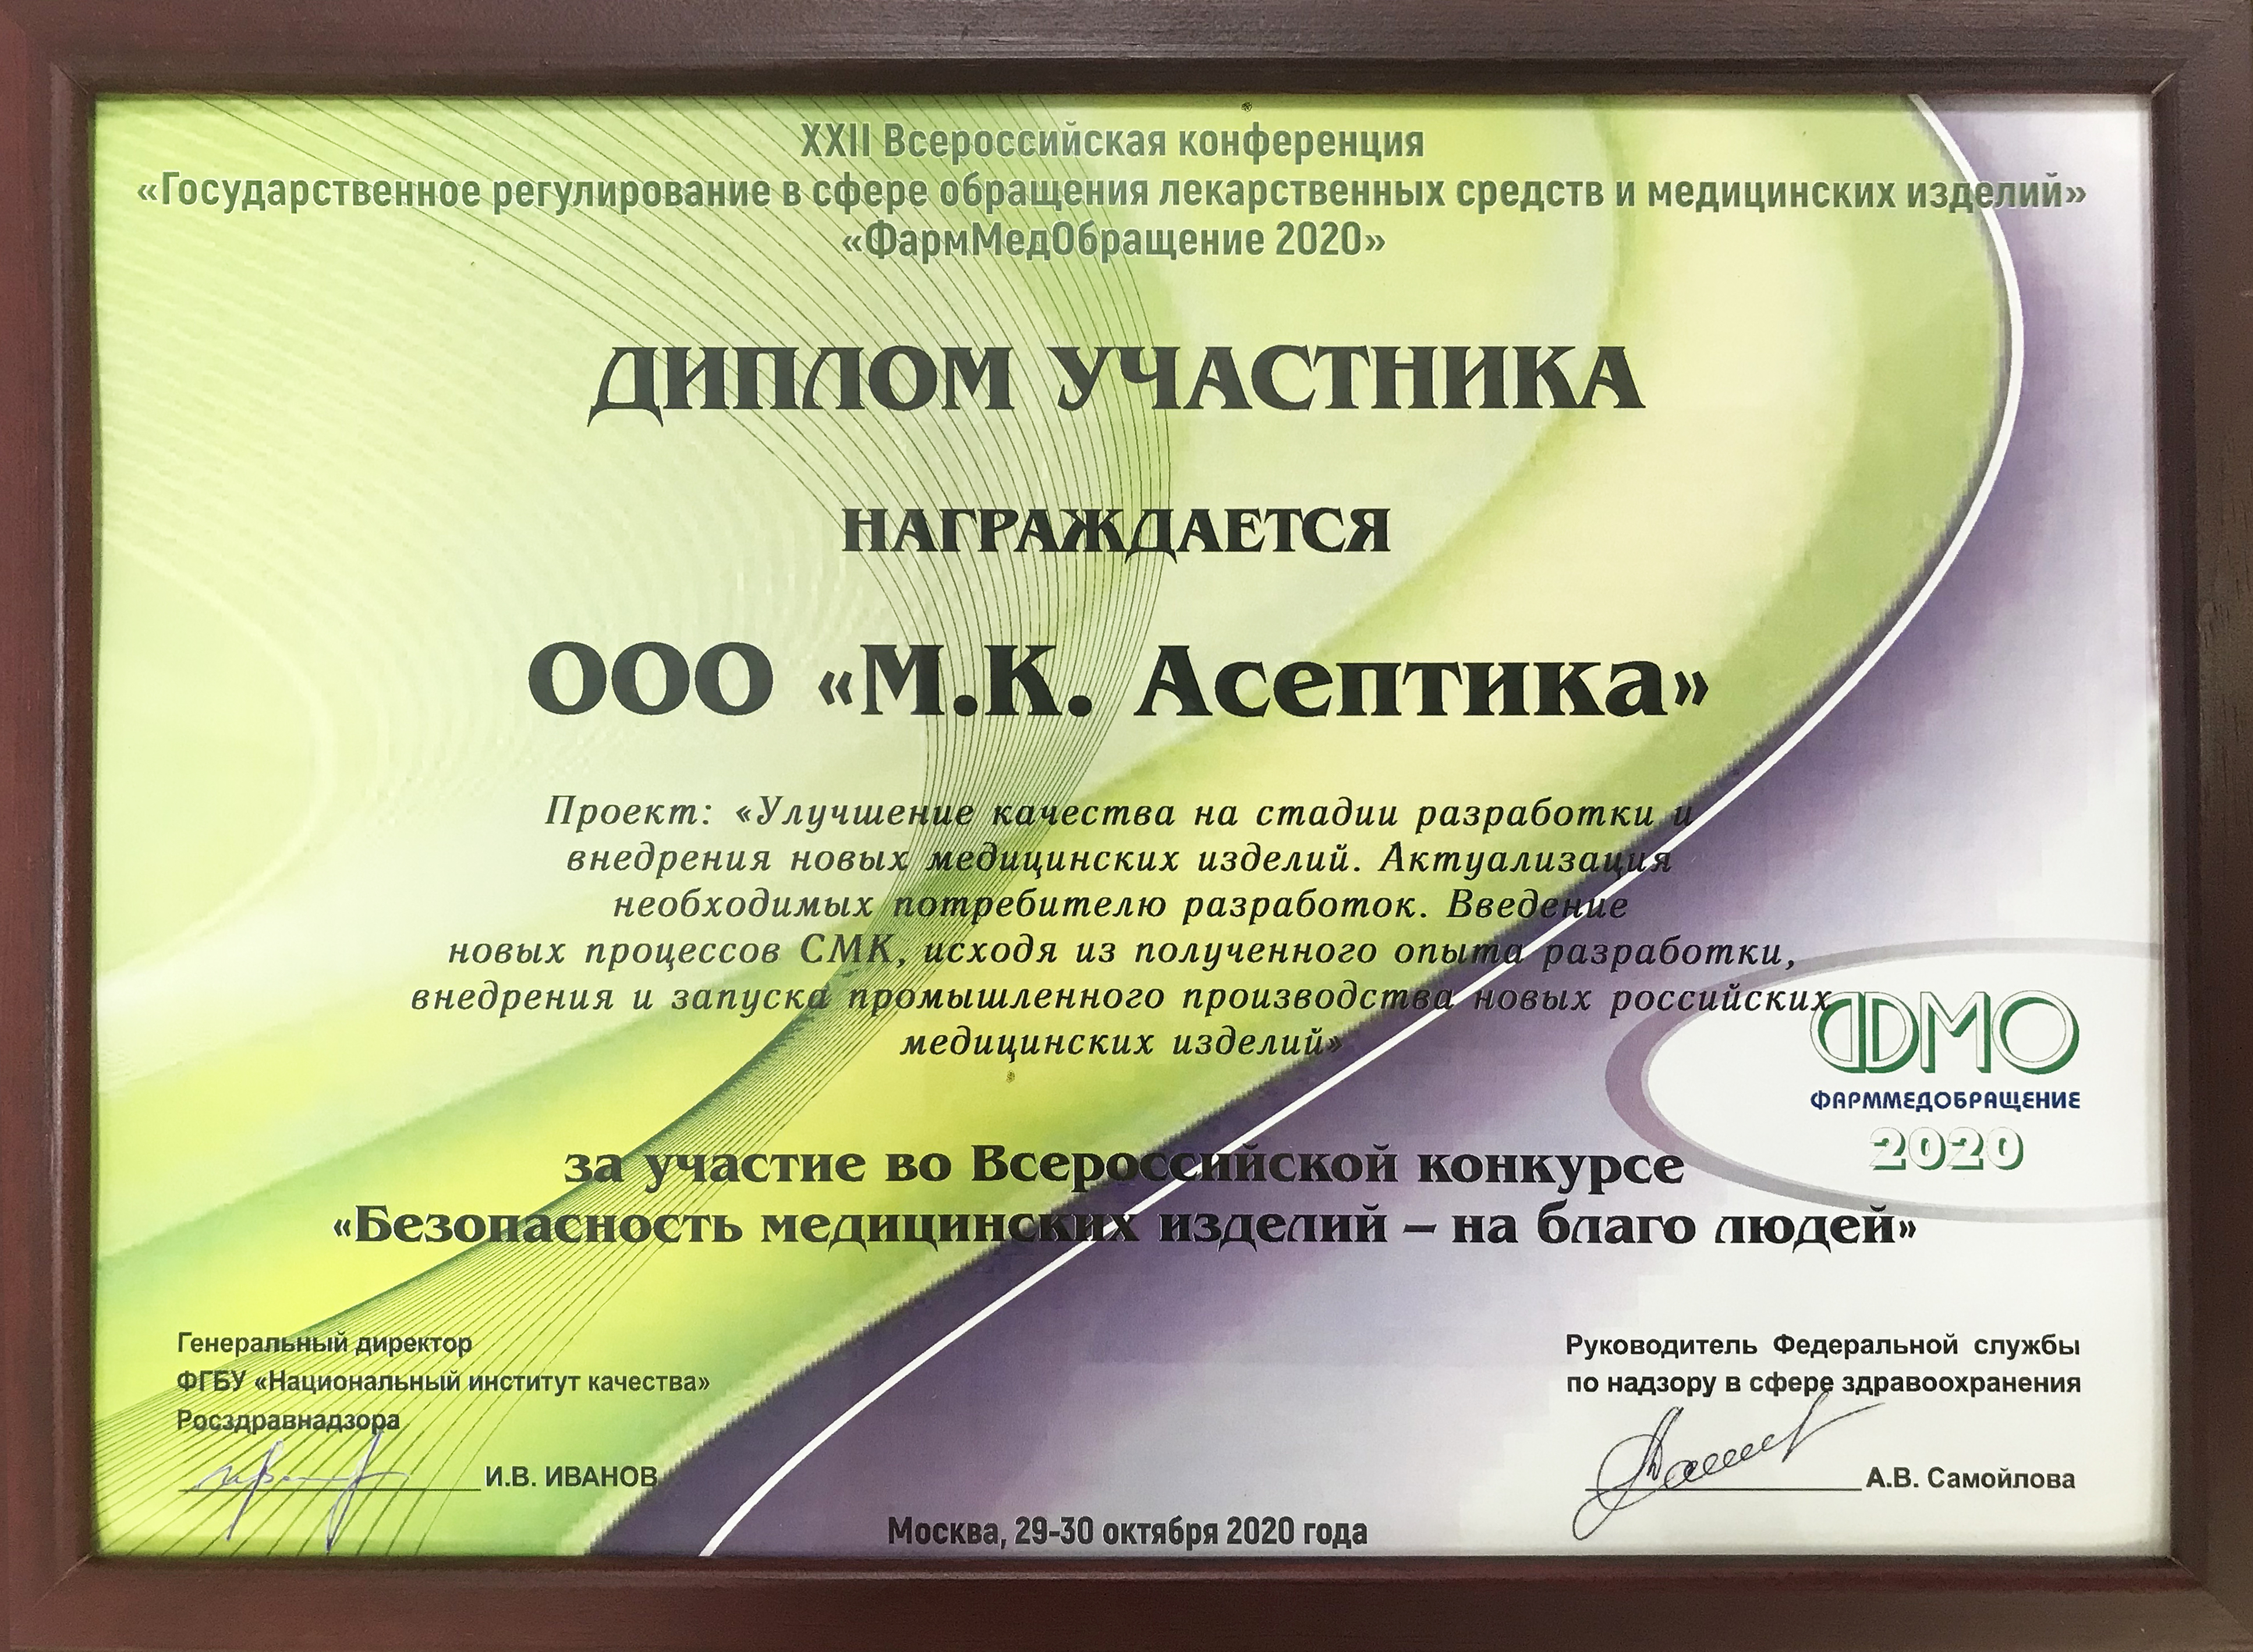 Диплом за участие во Всероссийском конкурсе "Безопасность медицинских изделий - на благо людей"